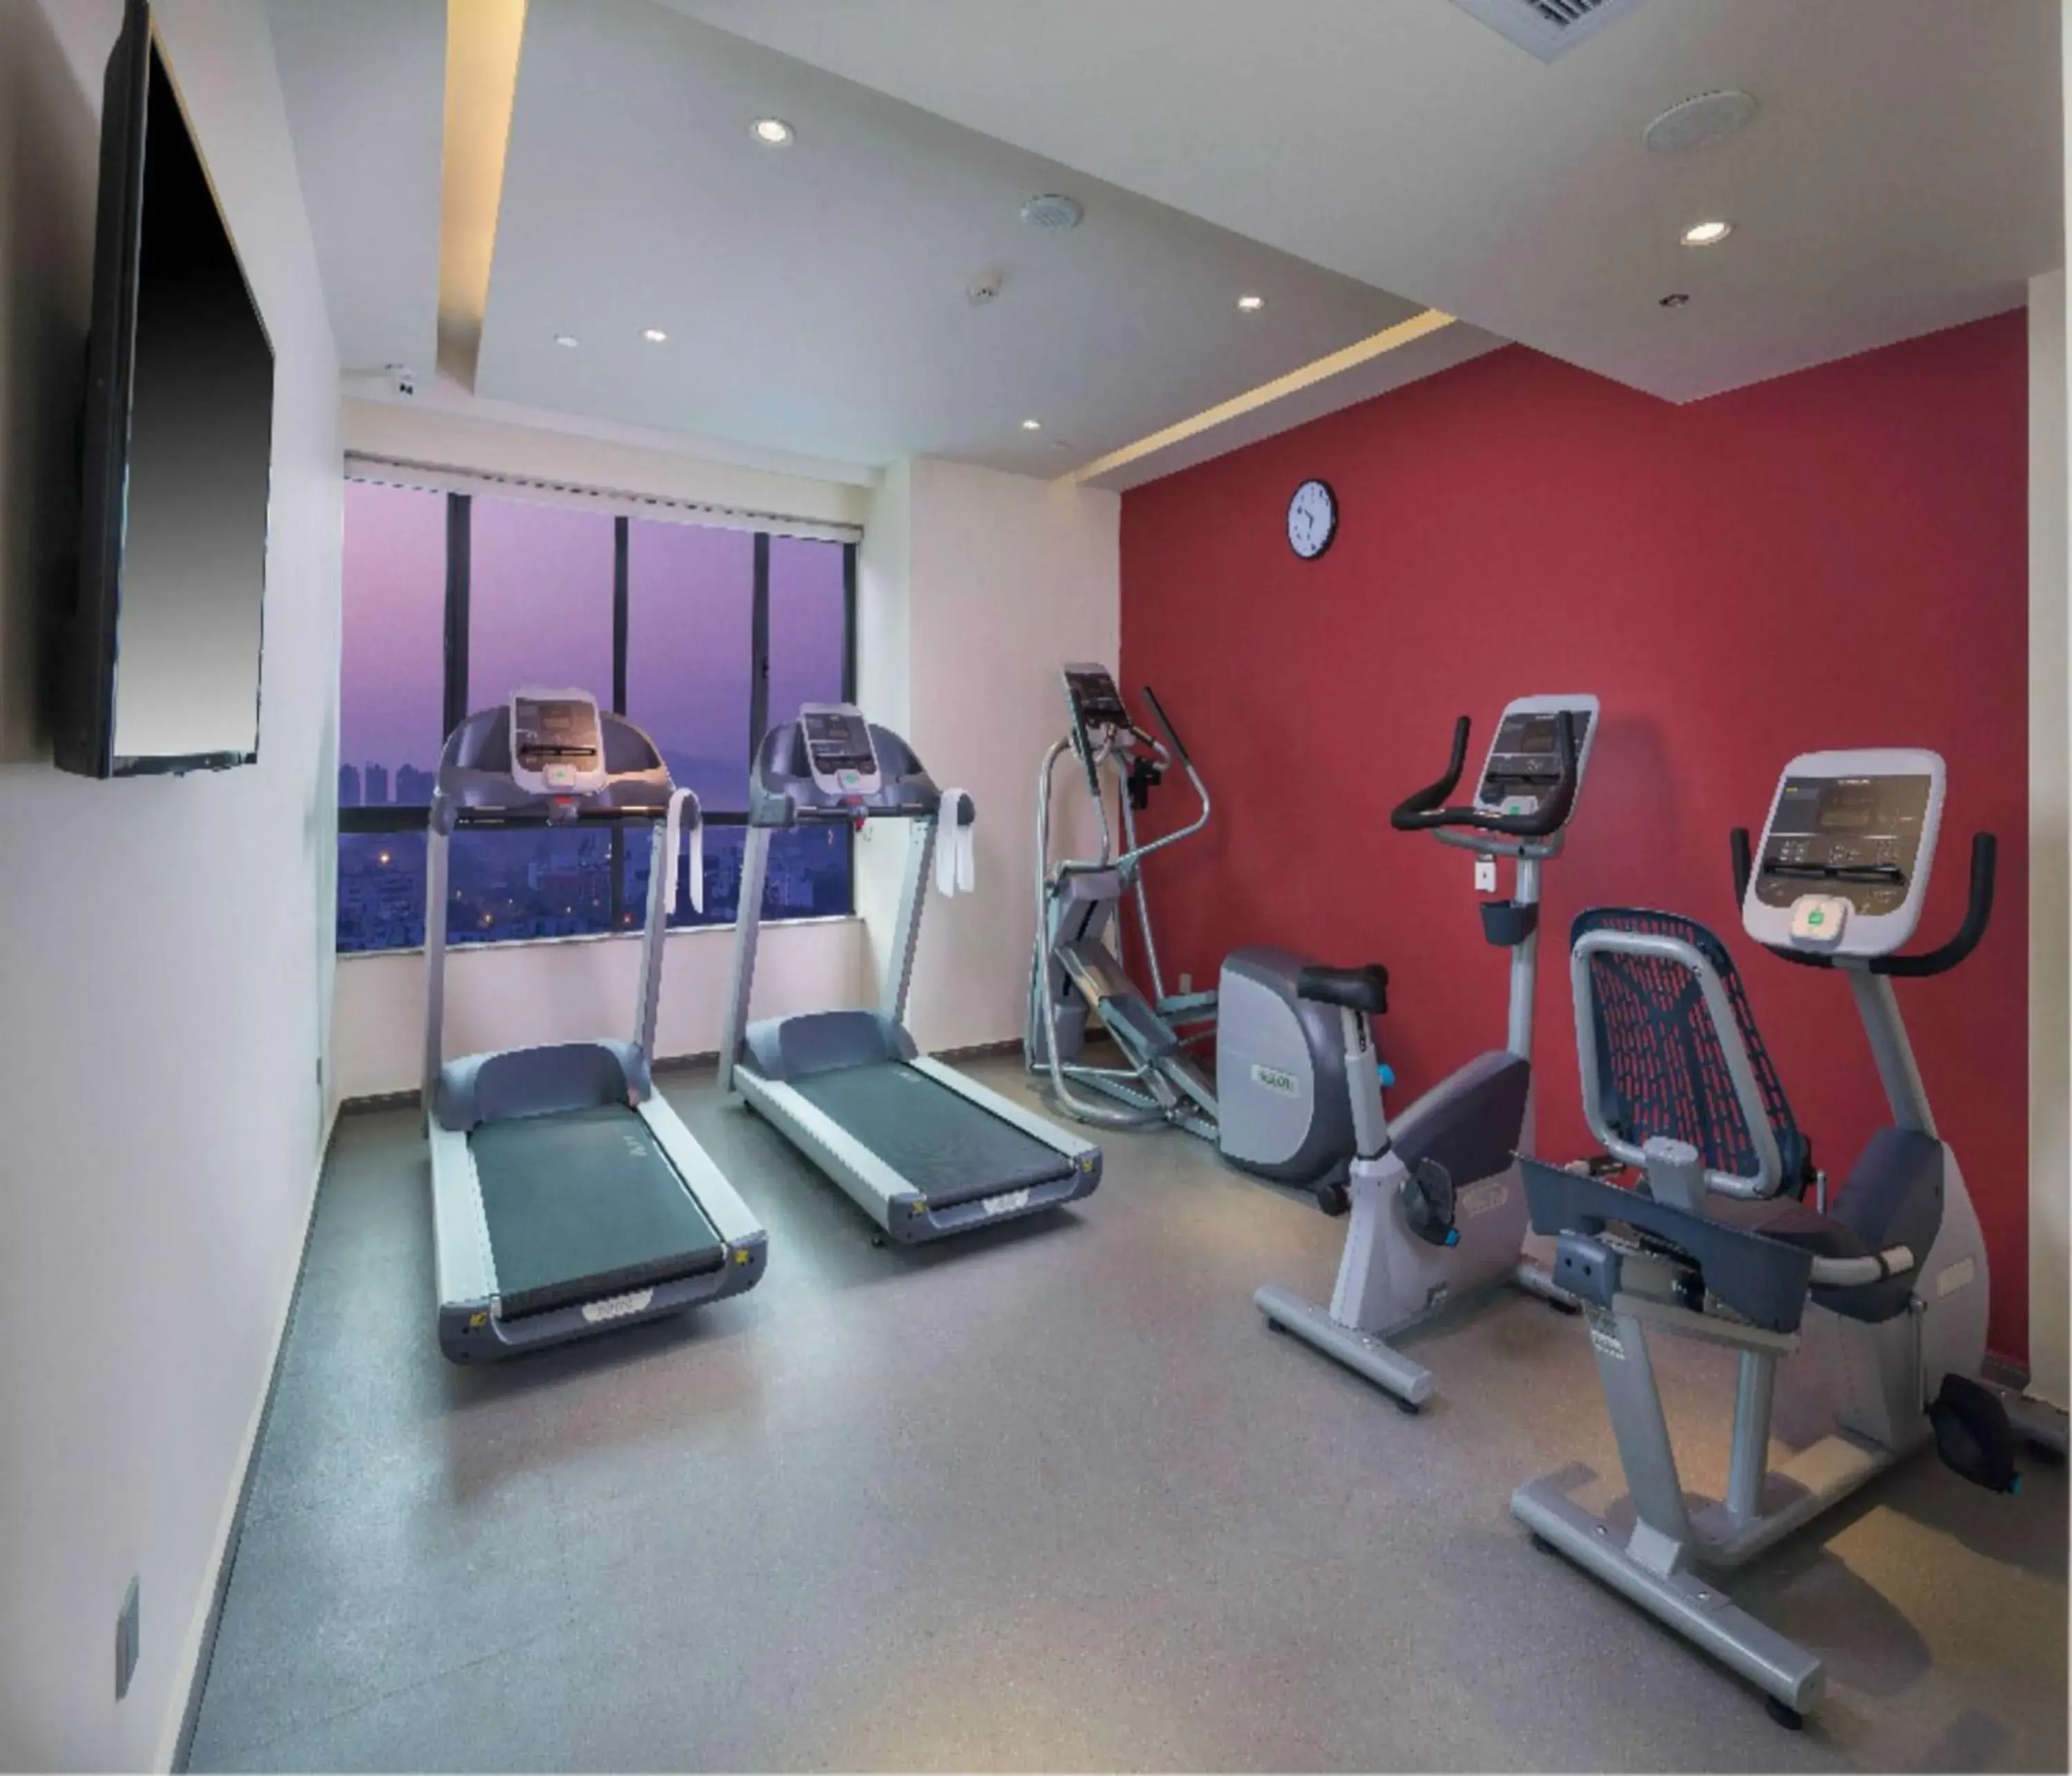 Fitness centre/facilities, Fitness Center/Facilities in Hilton Garden Inn Zhongshan Guzhen